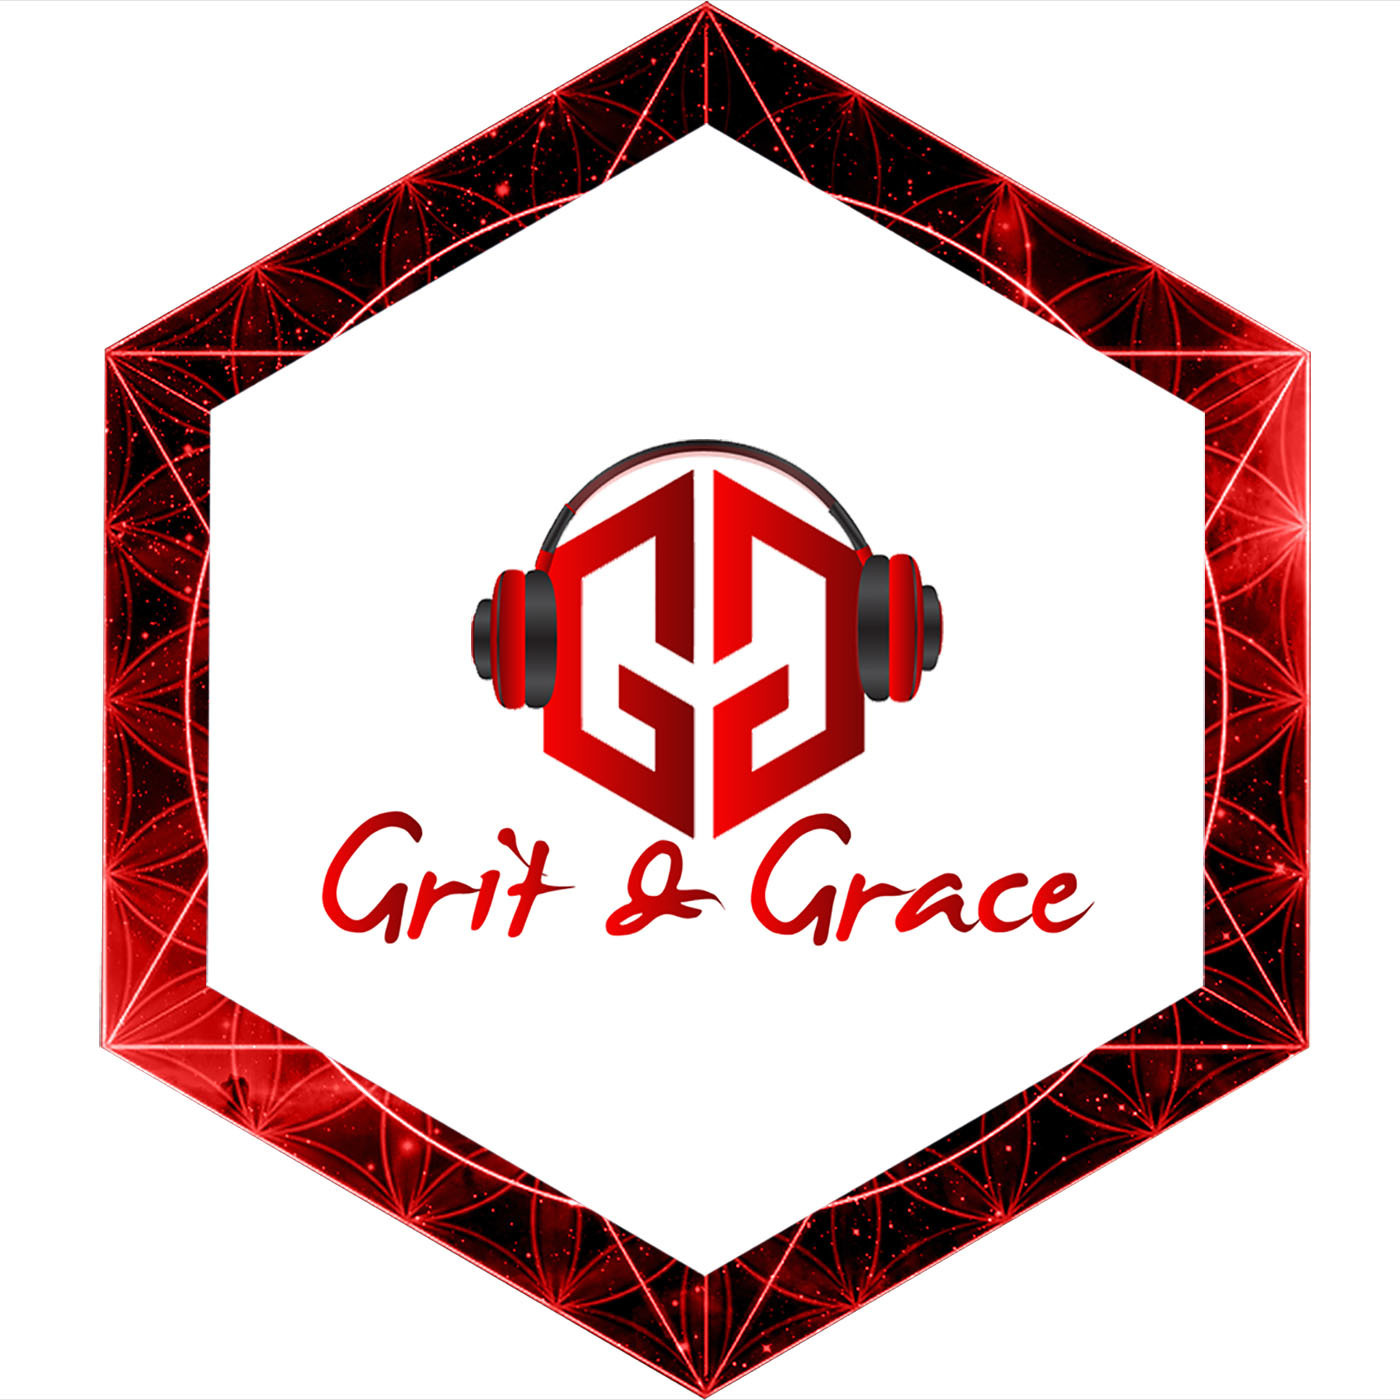 Grit and Grace Album Art